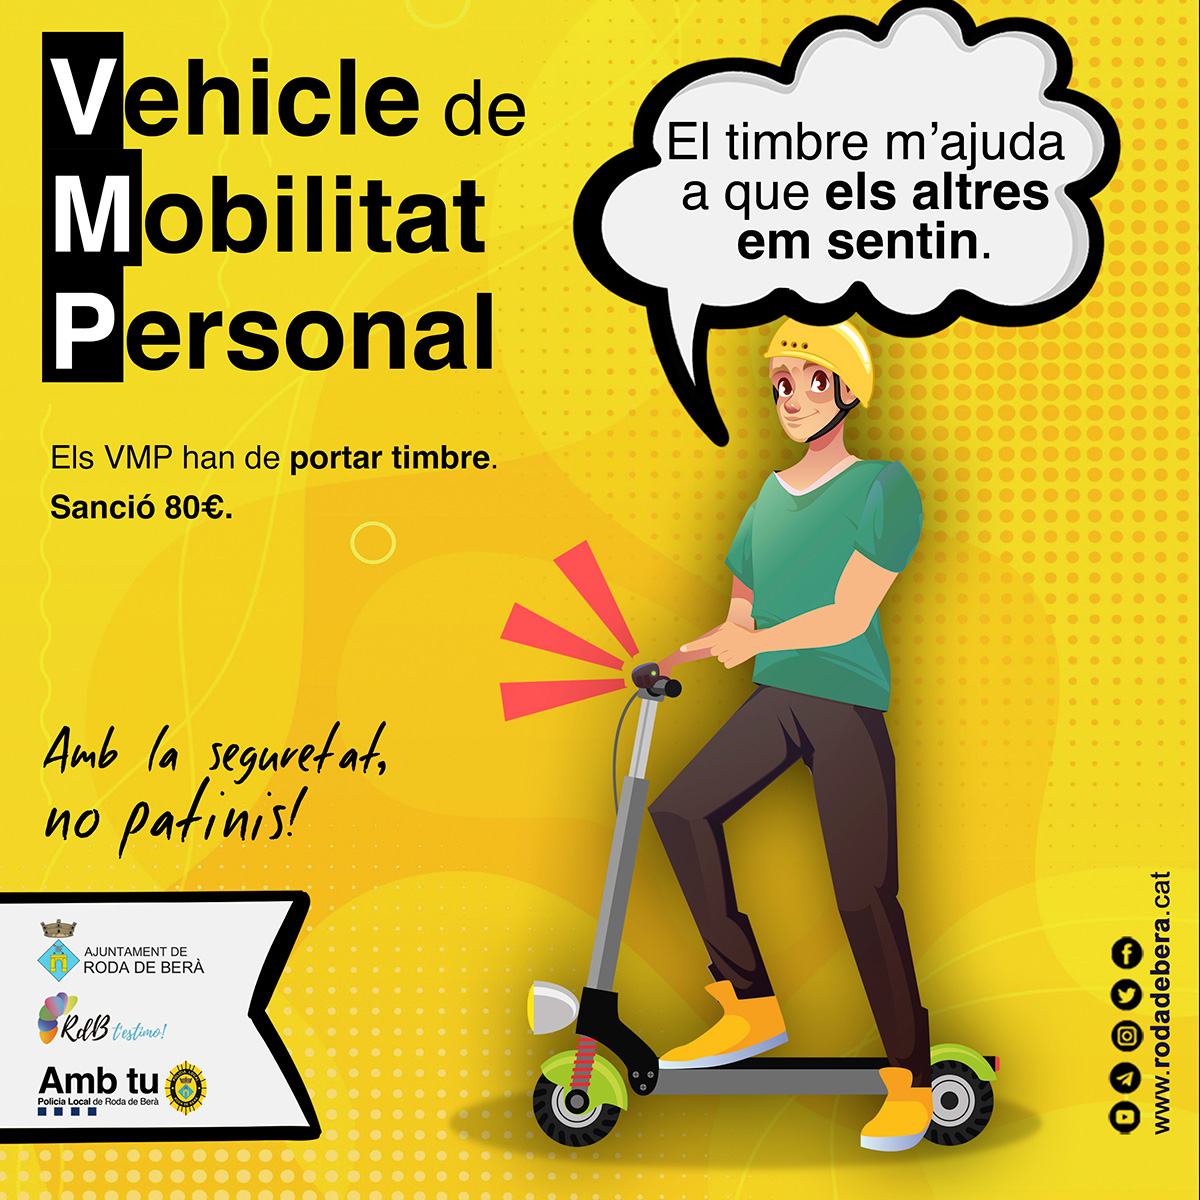 Vehicles de Mobilitat Personal